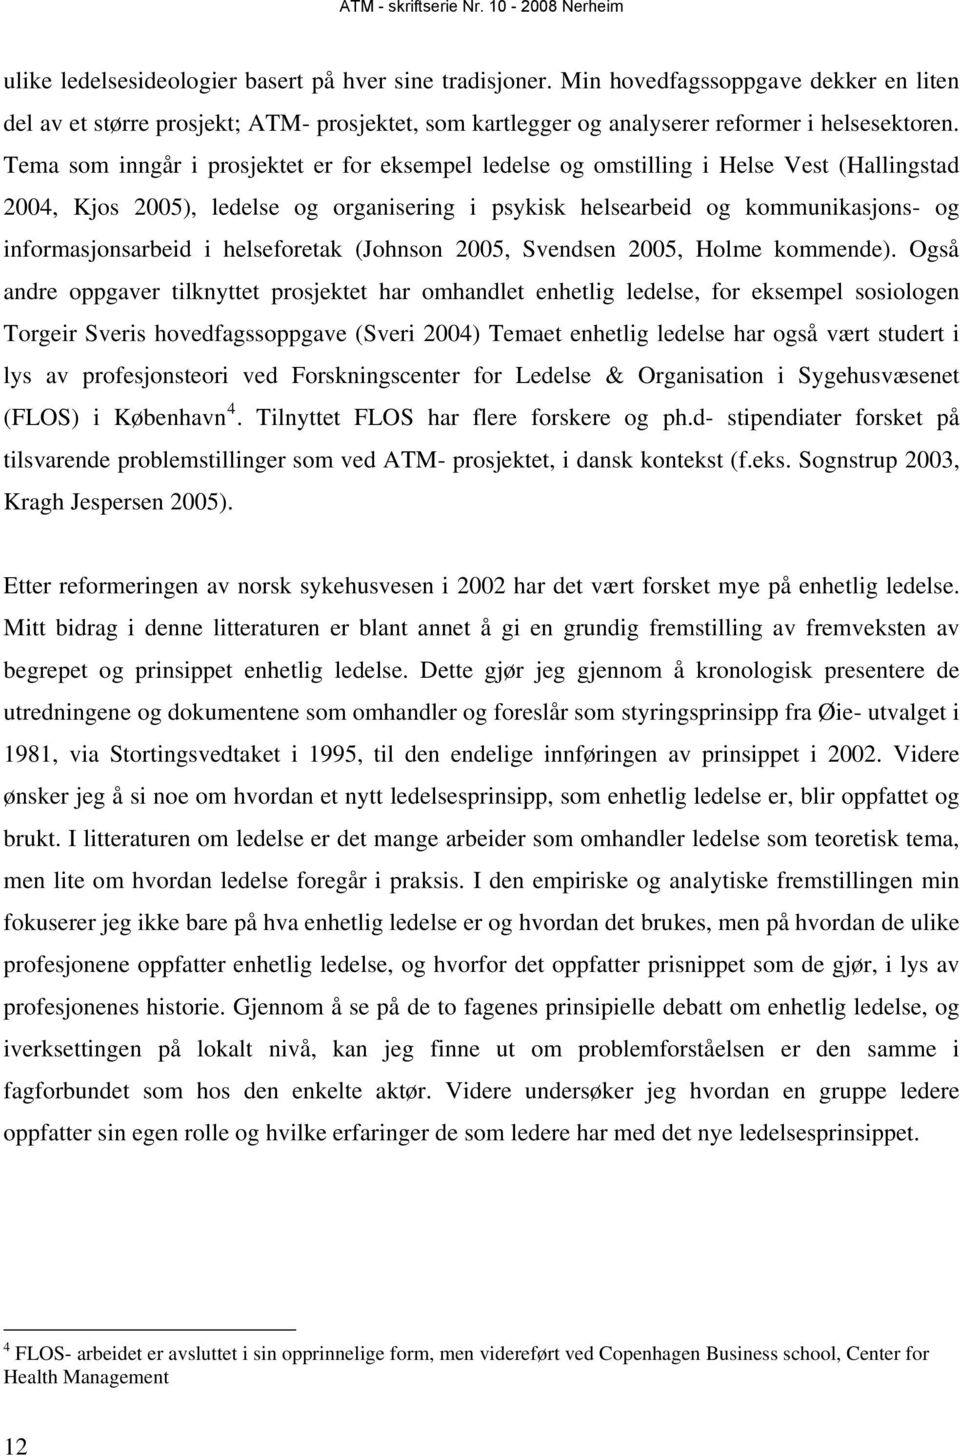 helseforetak (Johnson 2005, Svendsen 2005, Holme kommende).